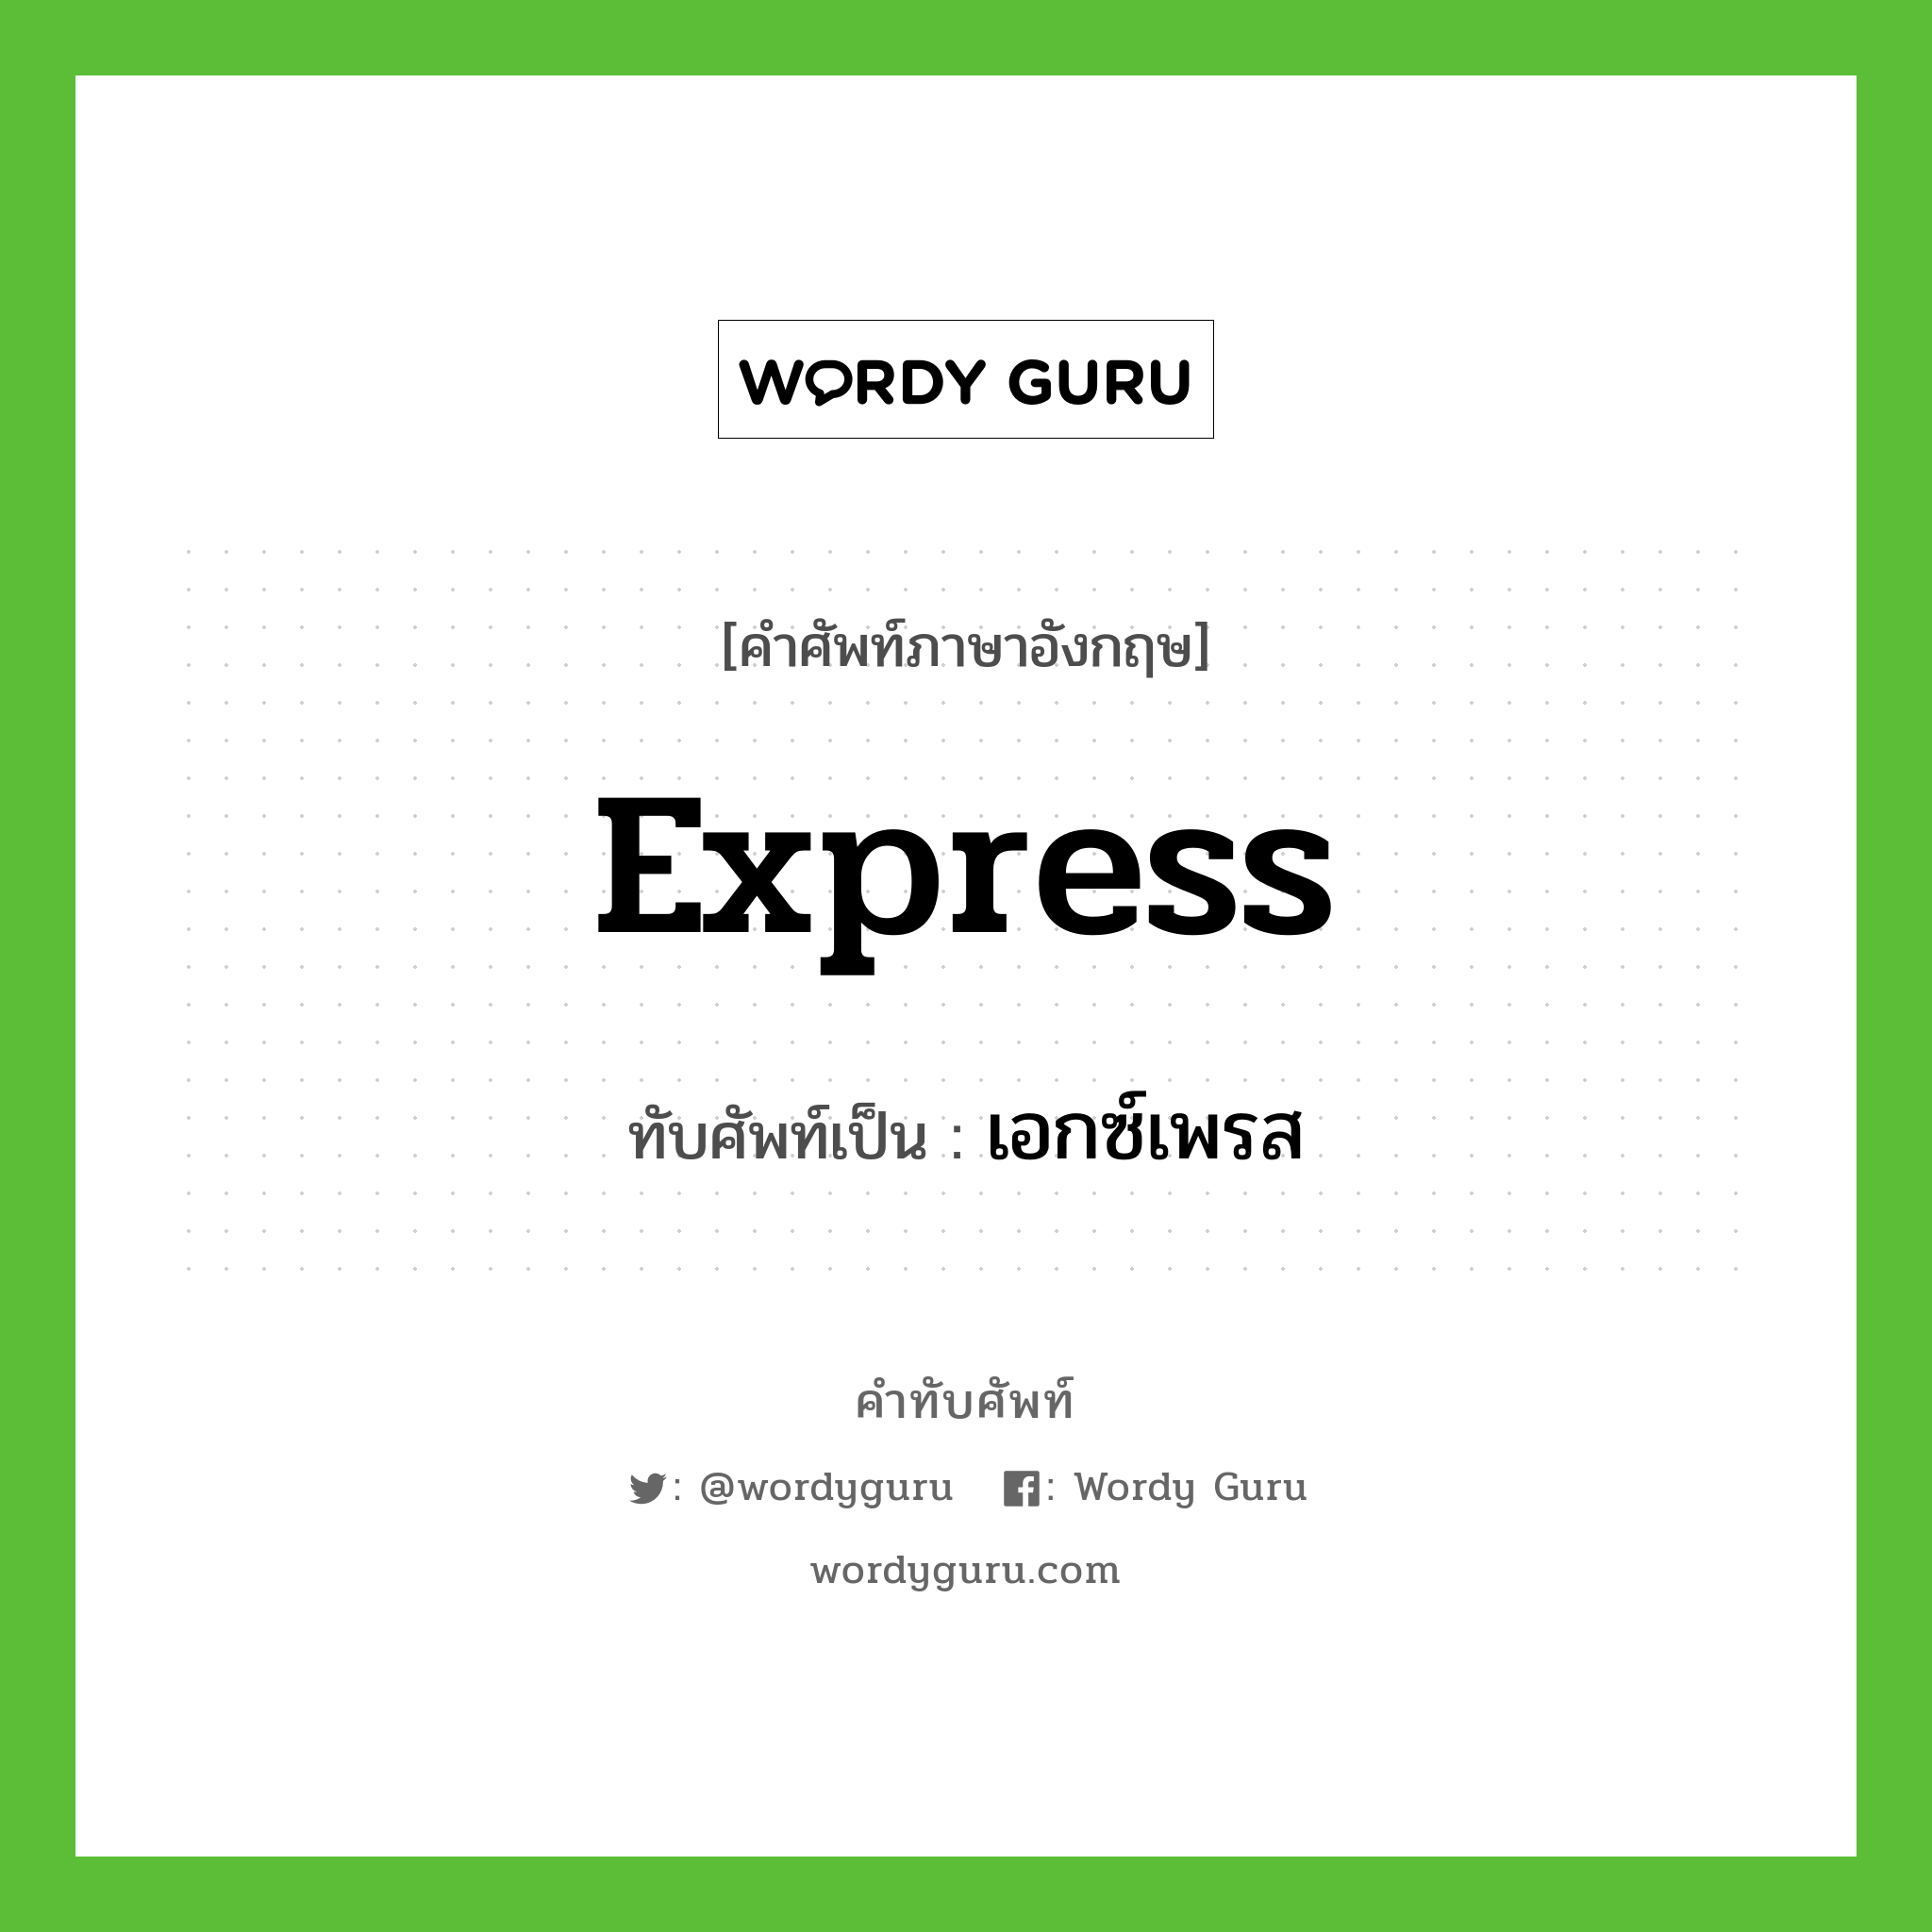 express เขียนเป็นคำไทยว่าอะไร?, คำศัพท์ภาษาอังกฤษ express ทับศัพท์เป็น เอกซ์เพรส